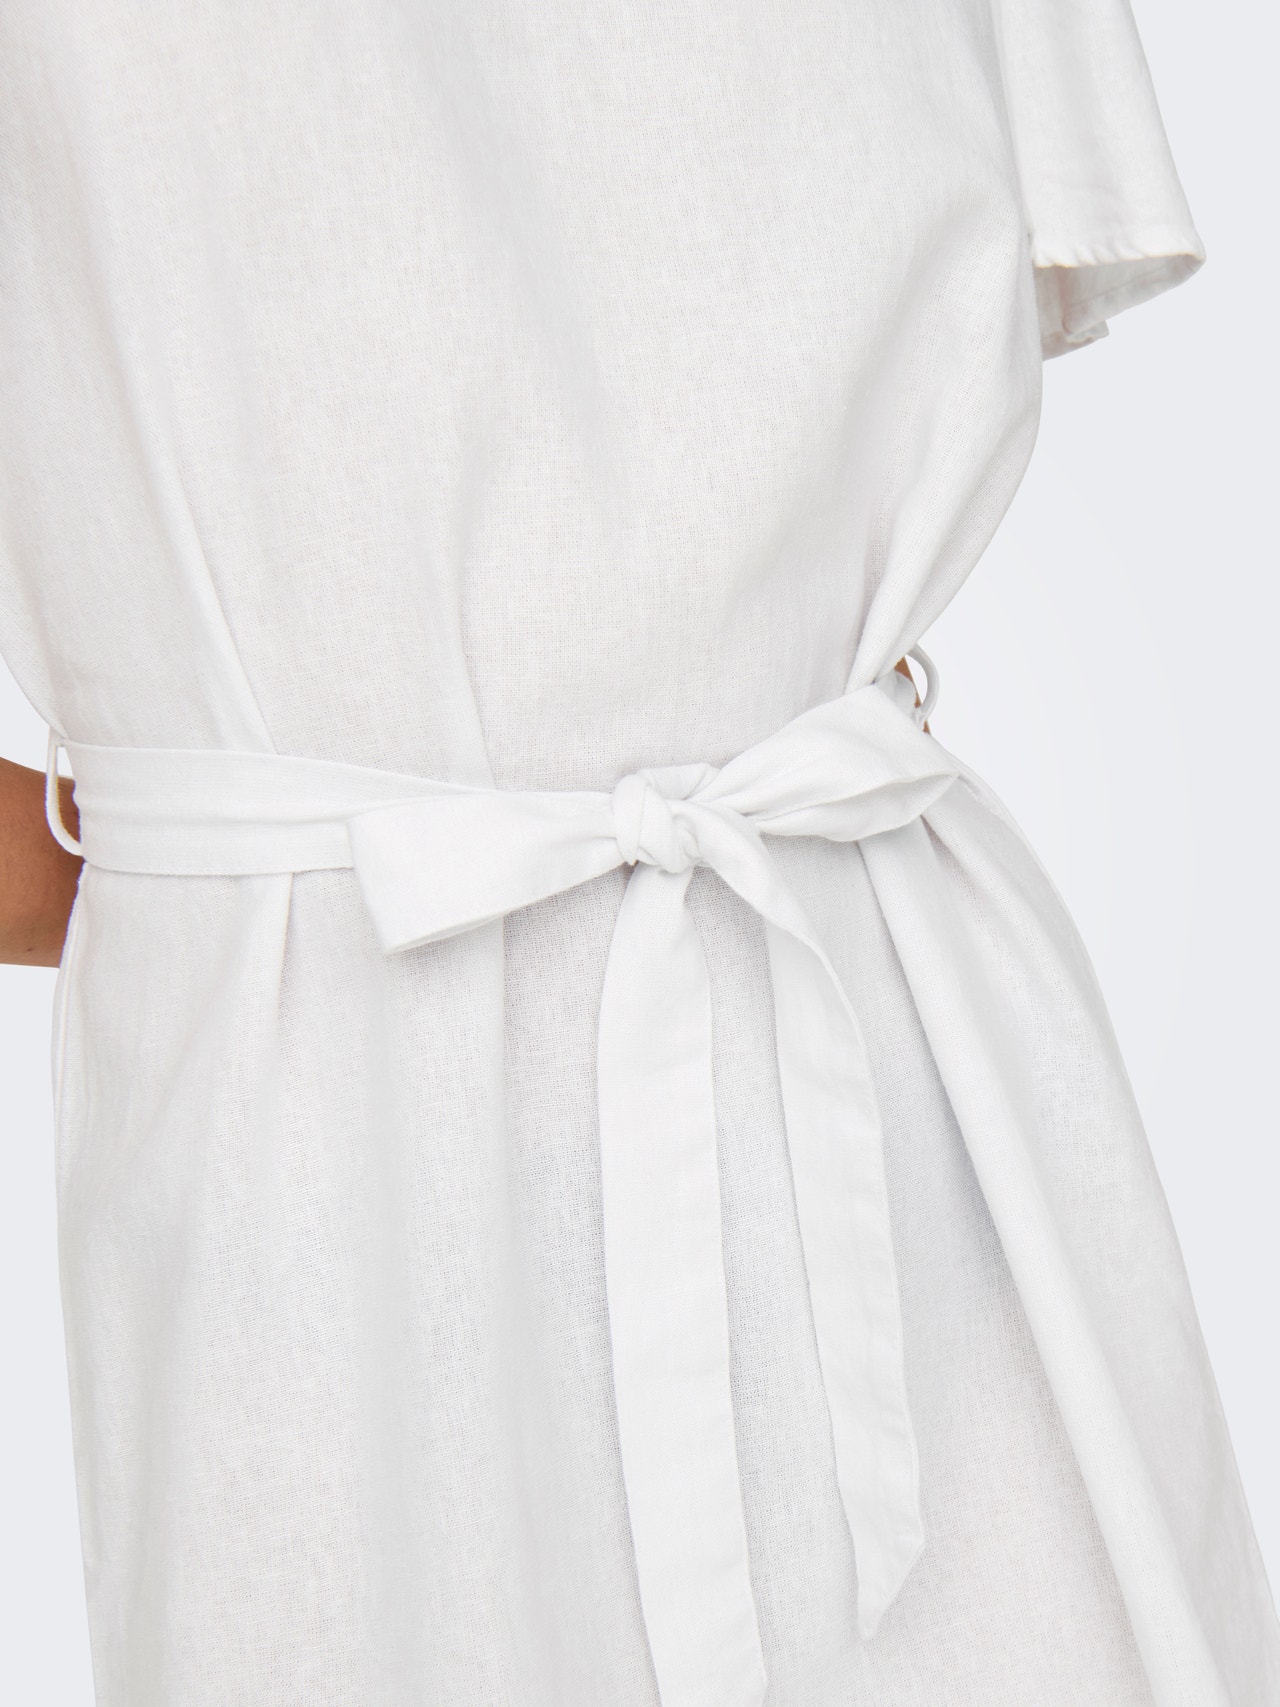 ONLY Mini v-hals kjole -Bright White - 15321189